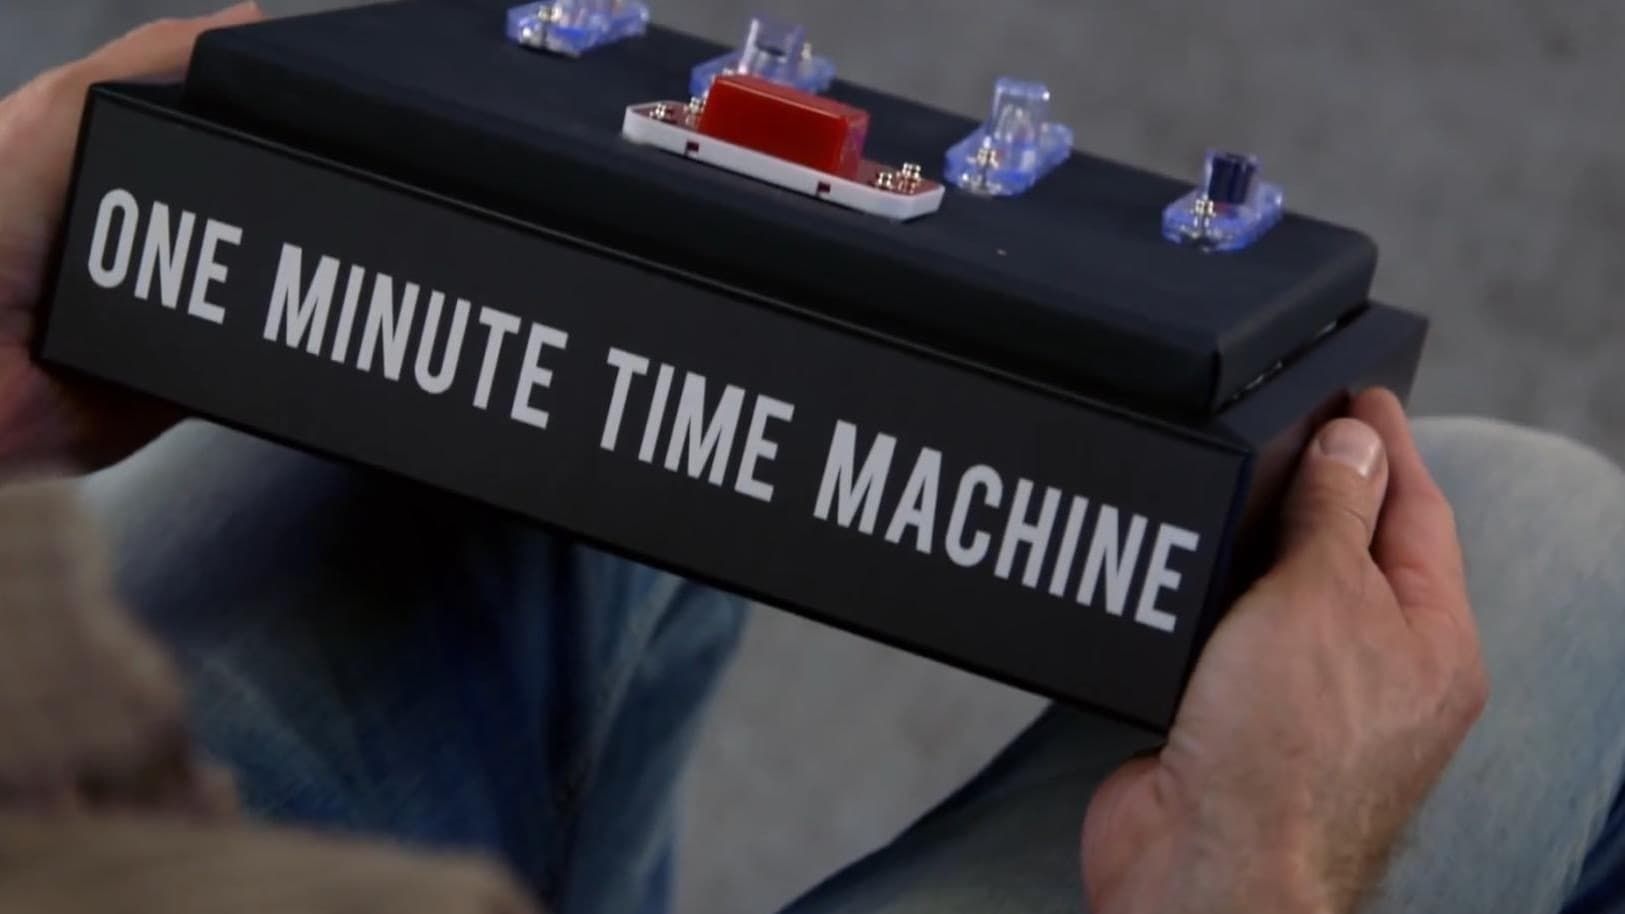 Cubierta de One-Minute Time Machine